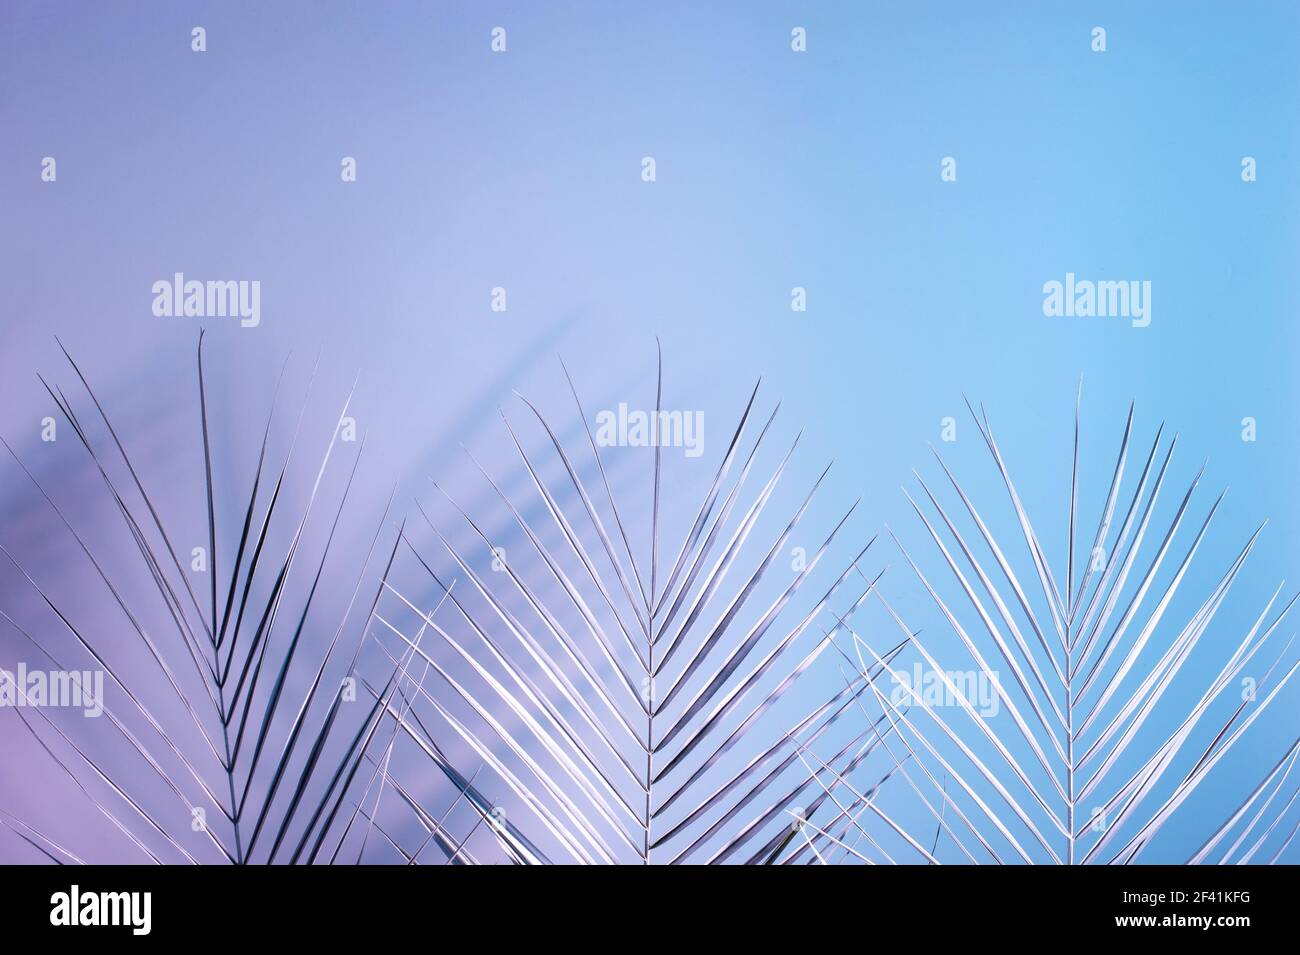 Kreatives Layout mit tropischen Palmenblättern mit doppelten bunten Schatten. Naturkonzept. Ultraviolette Farben flach legen. Stockfoto